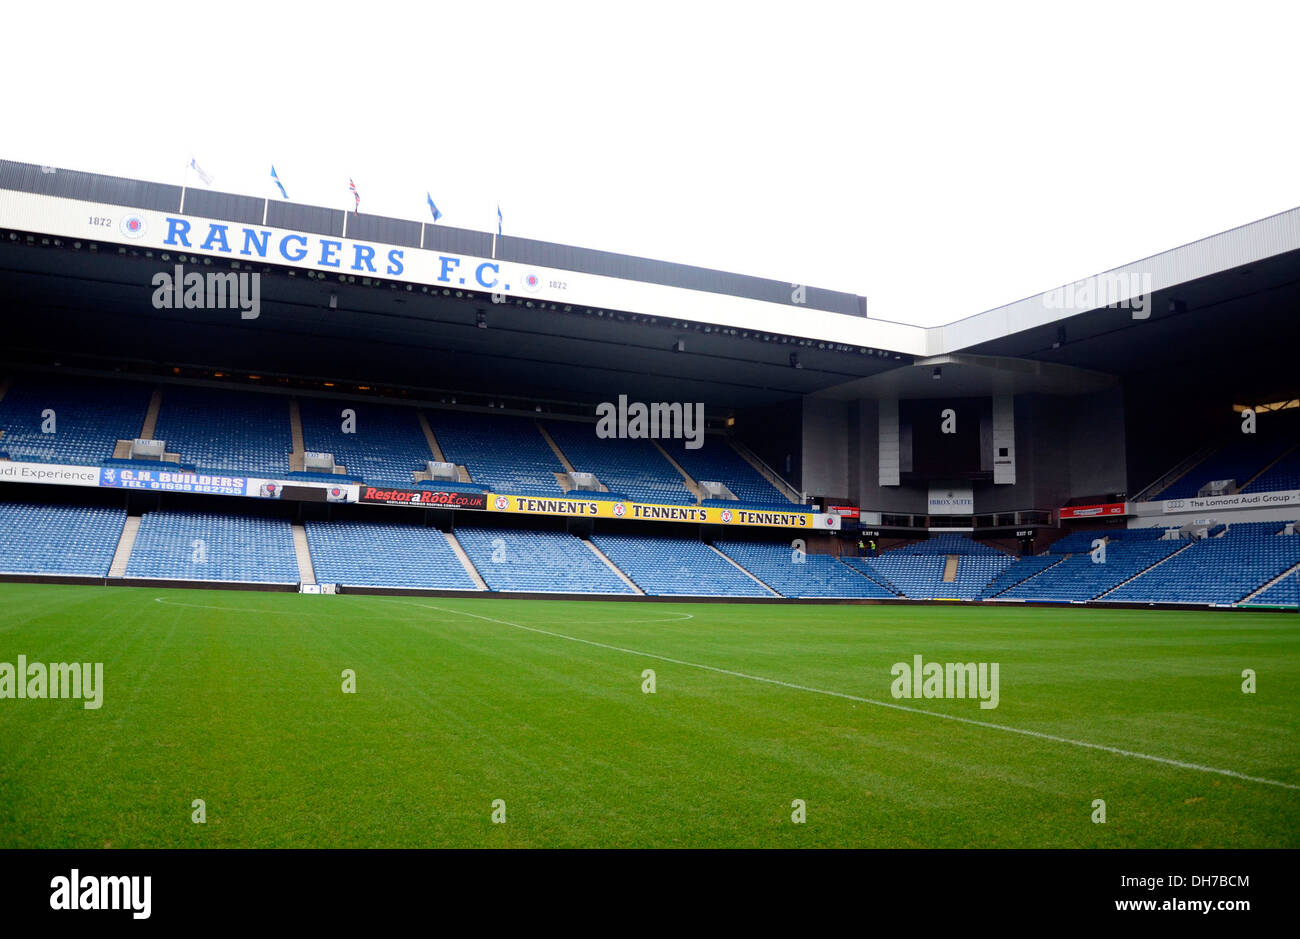 Rangers Football Club - Ibrox Stadium Glasgow, Scozia - 16.03.12 Foto stock  - Alamy